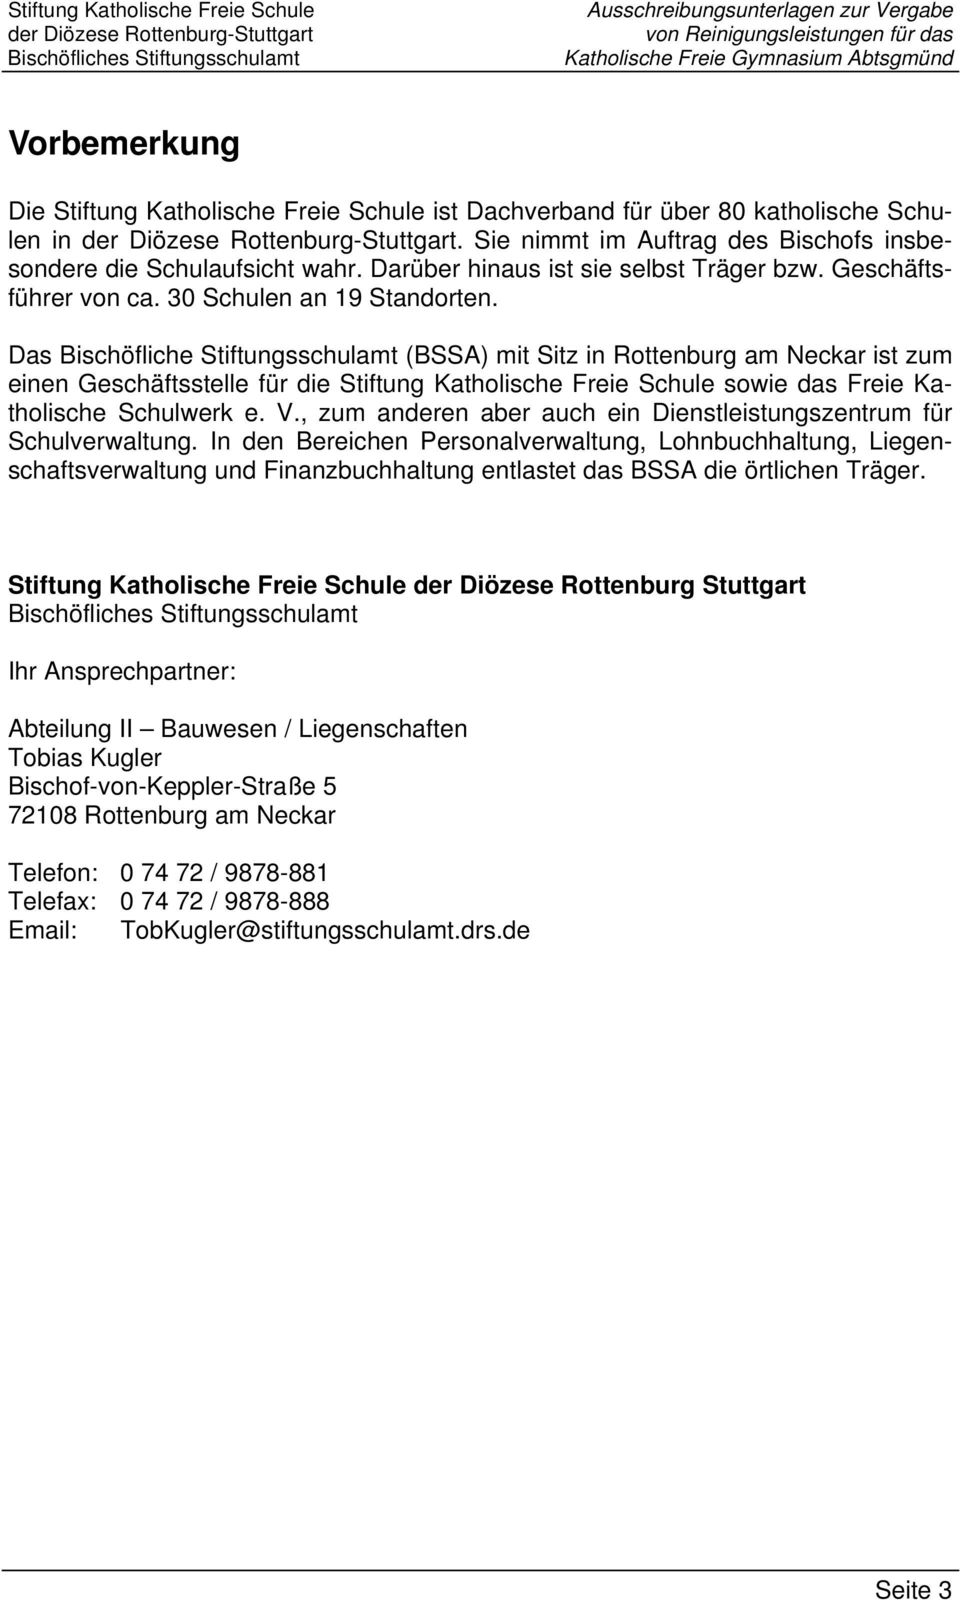 Das Bischöfliche Stiftungsschulamt (BSSA) mit Sitz in Rottenburg am Neckar ist zum einen Geschäftsstelle für die Stiftung Katholische Freie Schule sowie das Freie Katholische Schulwerk e. V.